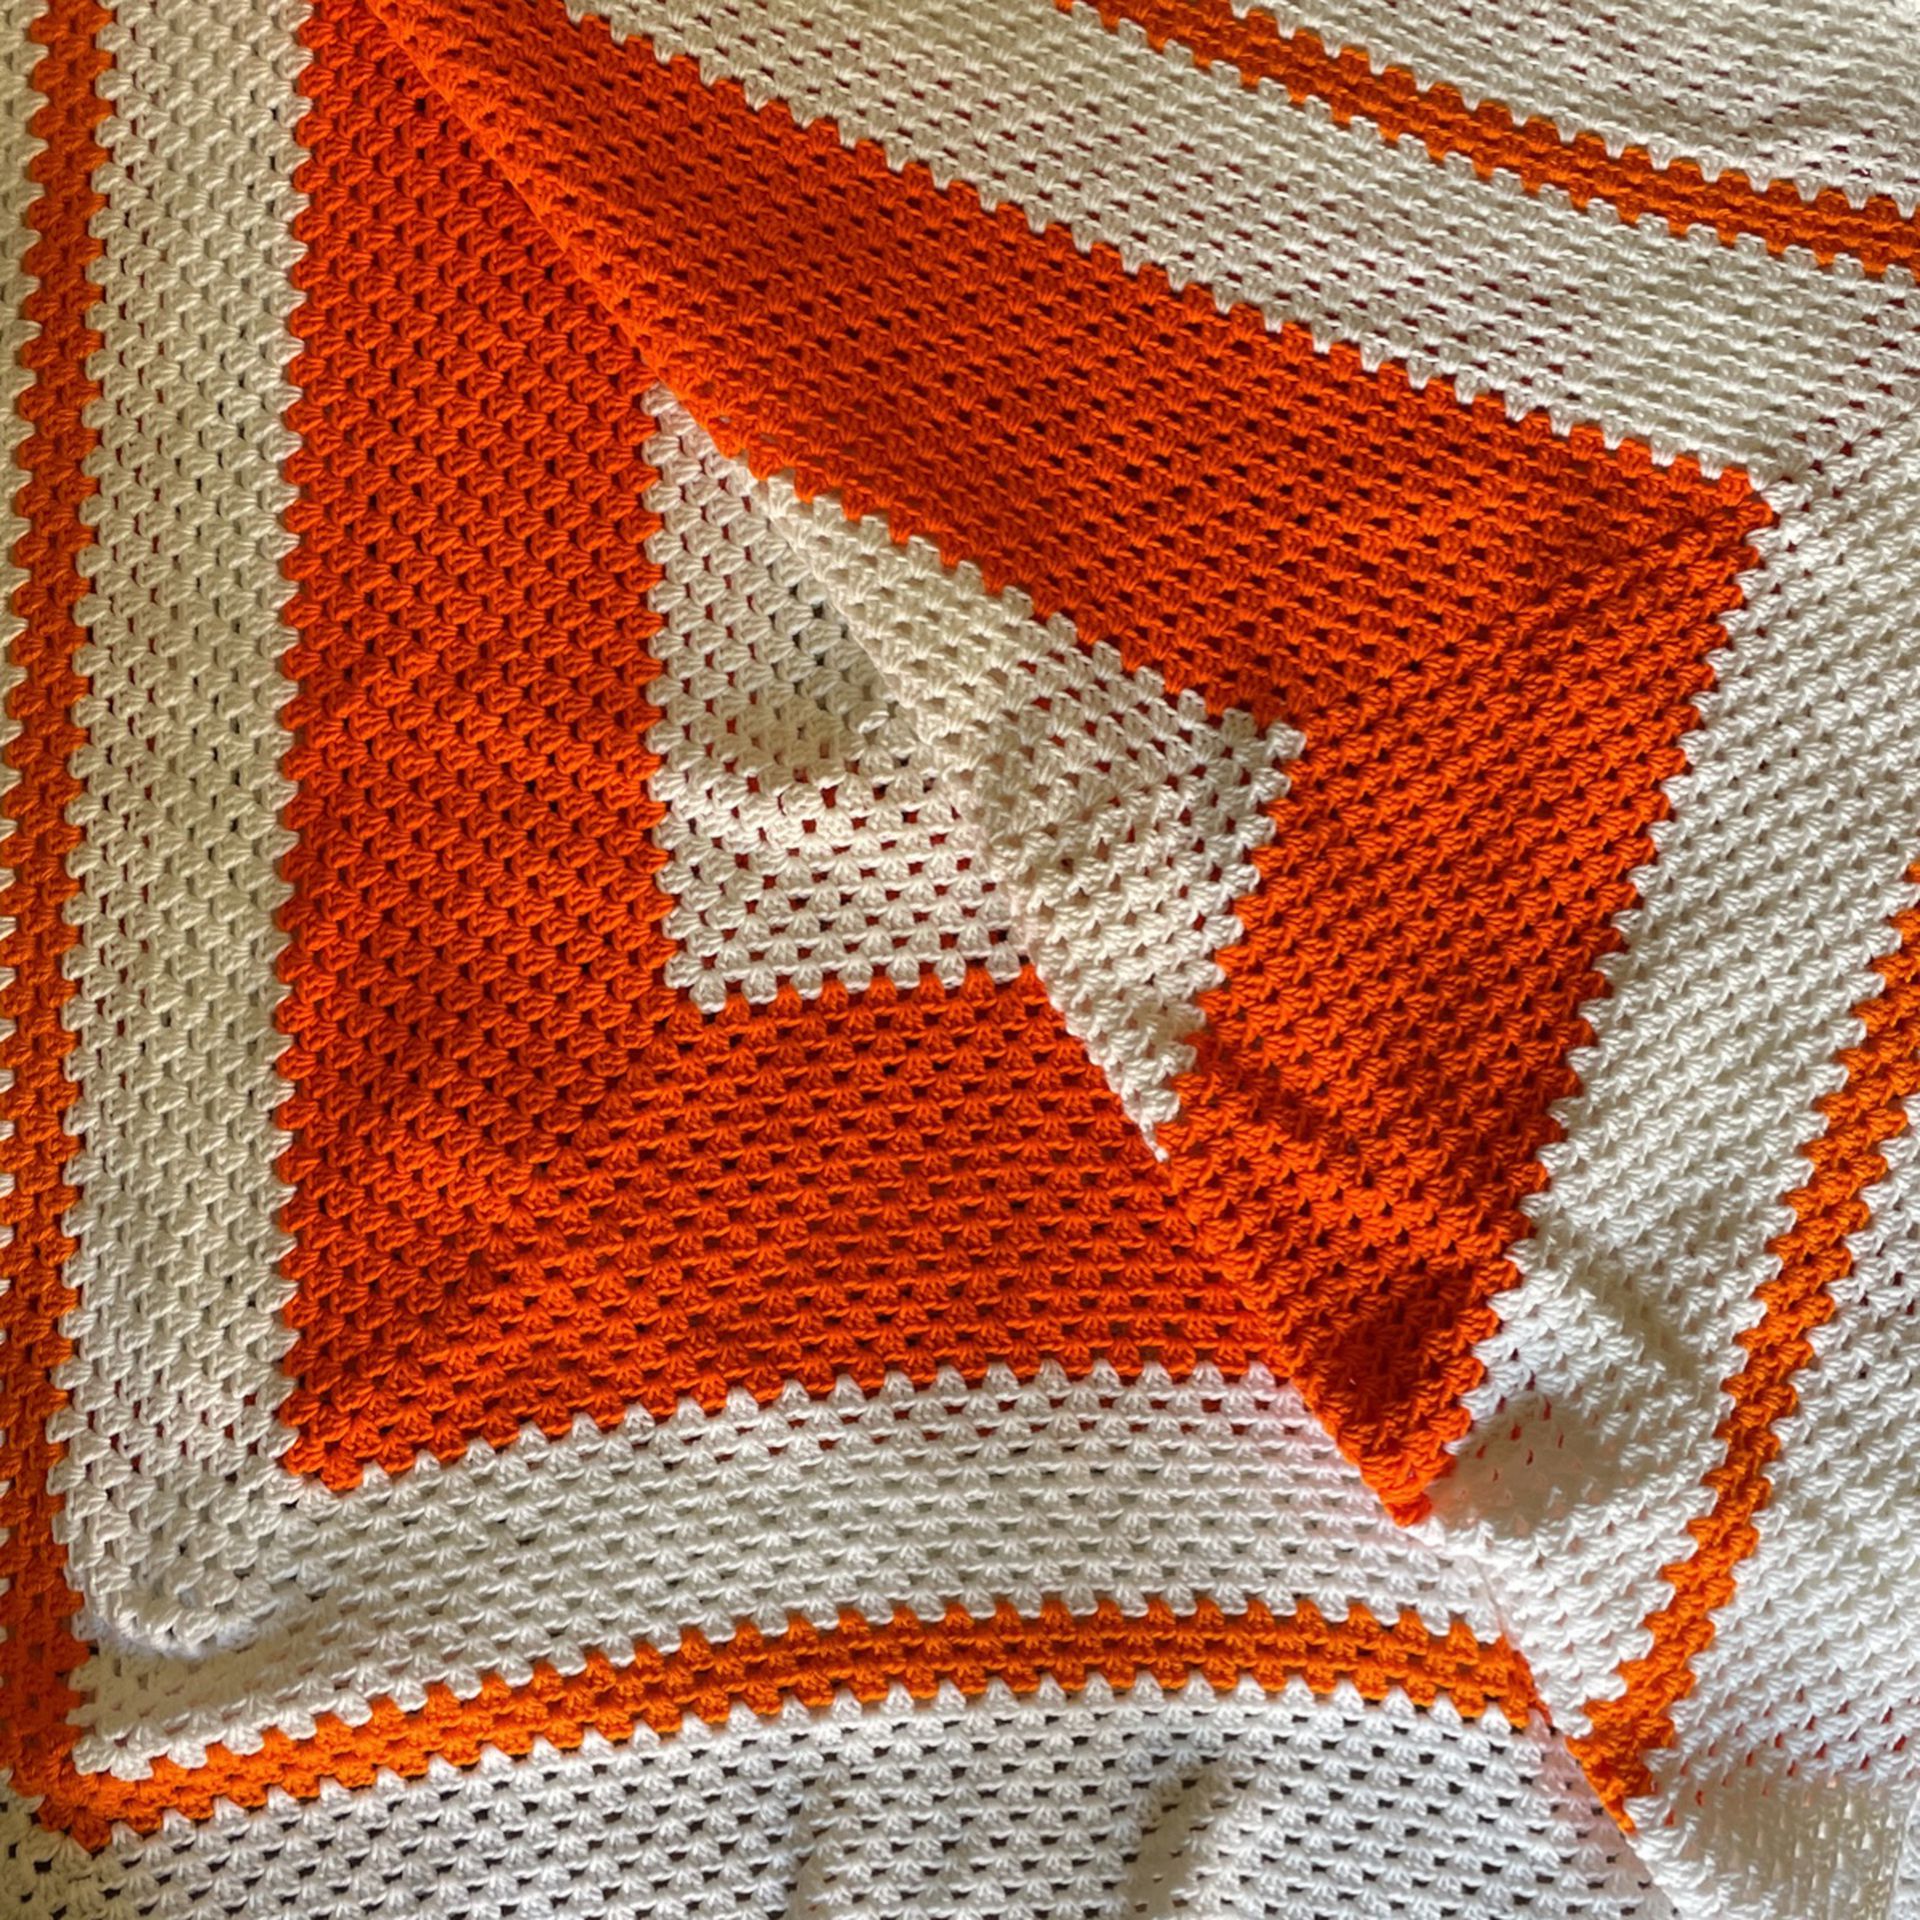 Handmade Crochet Blanket, Orange And White, King/Queen